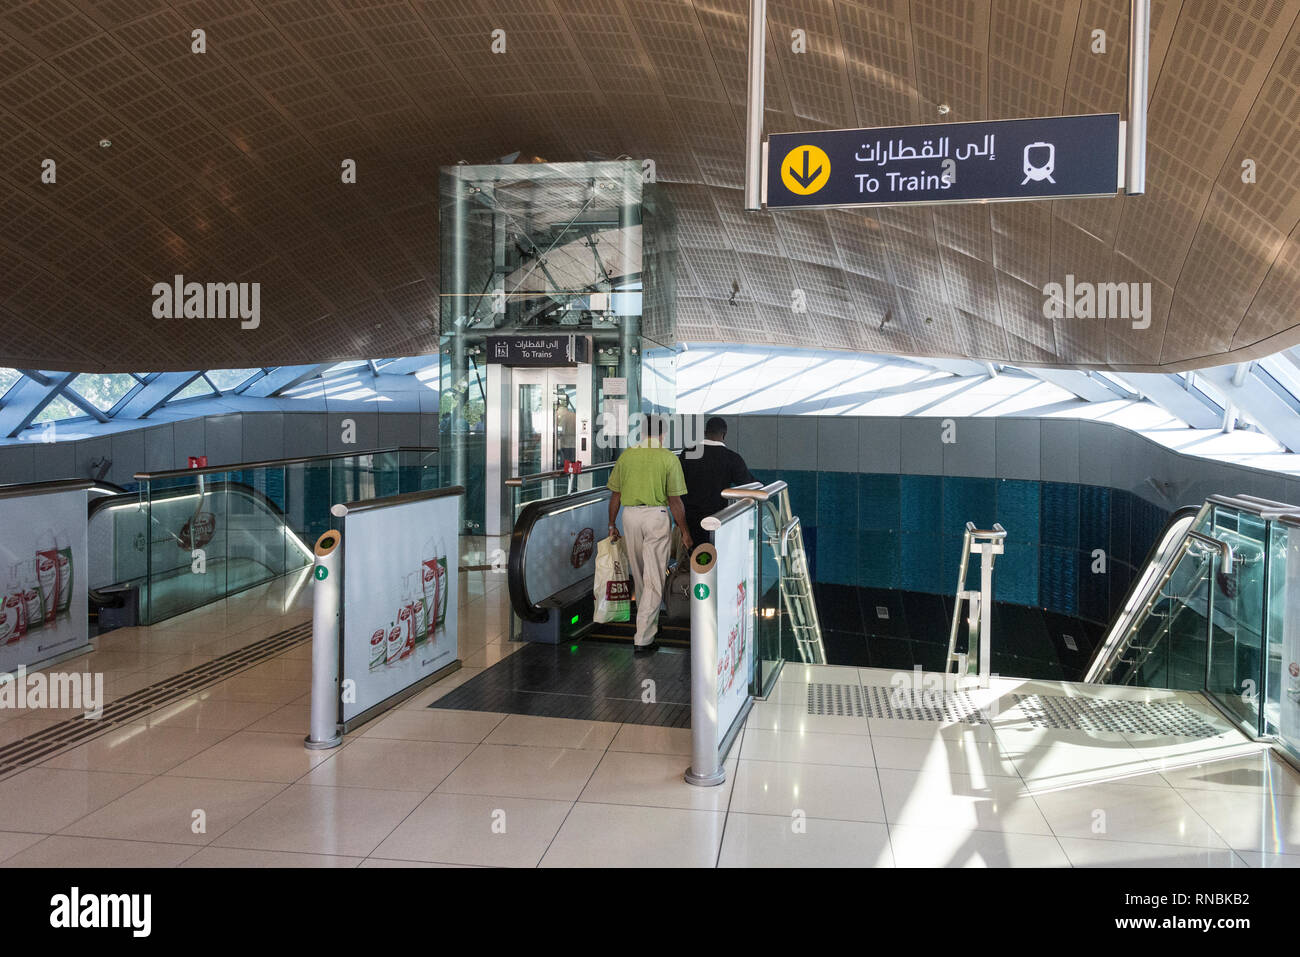 Les passagers des trains à la station de métro Union dans l'Union Square off Al Maktoum Road Diera, À DUBAÏ, ÉMIRATS ARABES UNIS Emirats arabes unis (EAU), Banque D'Images